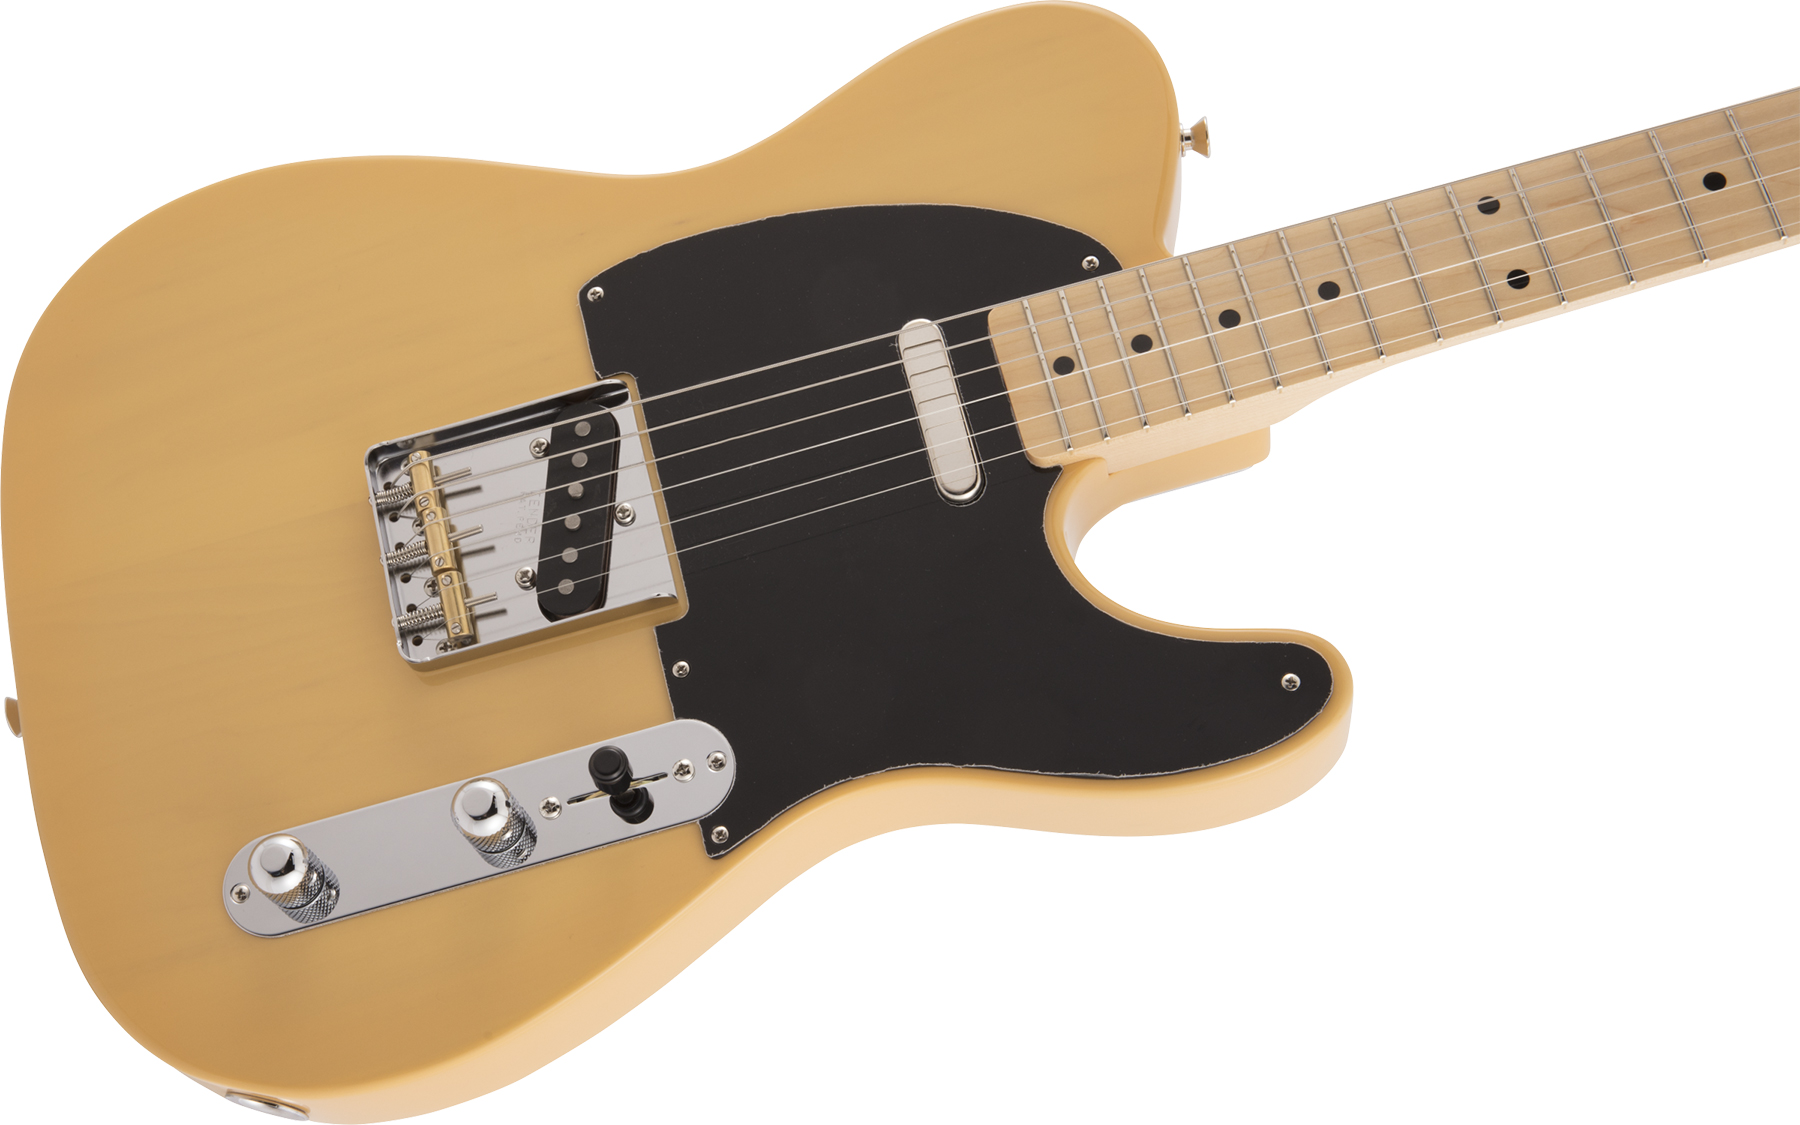 Fender Tele Traditional 50s Jap Mn - Butterscotch Blonde - Guitarra eléctrica con forma de tel - Variation 2